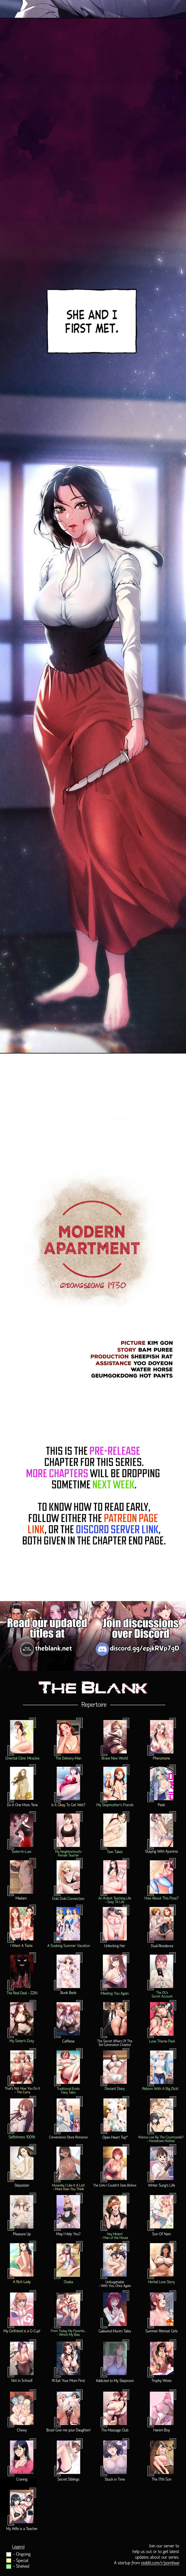 modern-apartment-gyeonseong-1930-chap-1-15